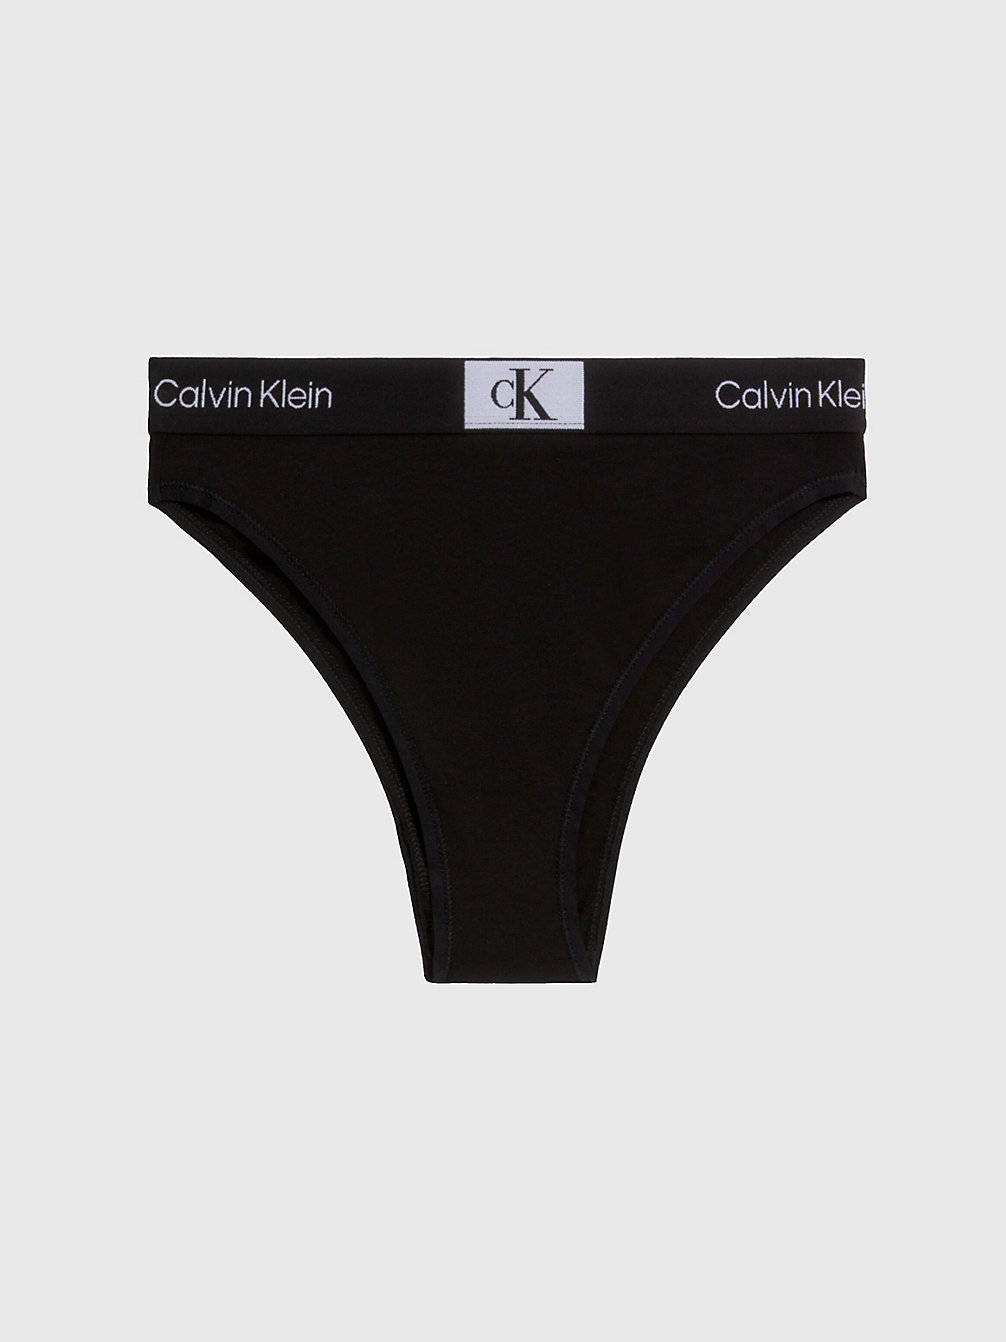 BLACK Brazilian Slip Hoge Taille - Ck96 undefined dames Calvin Klein